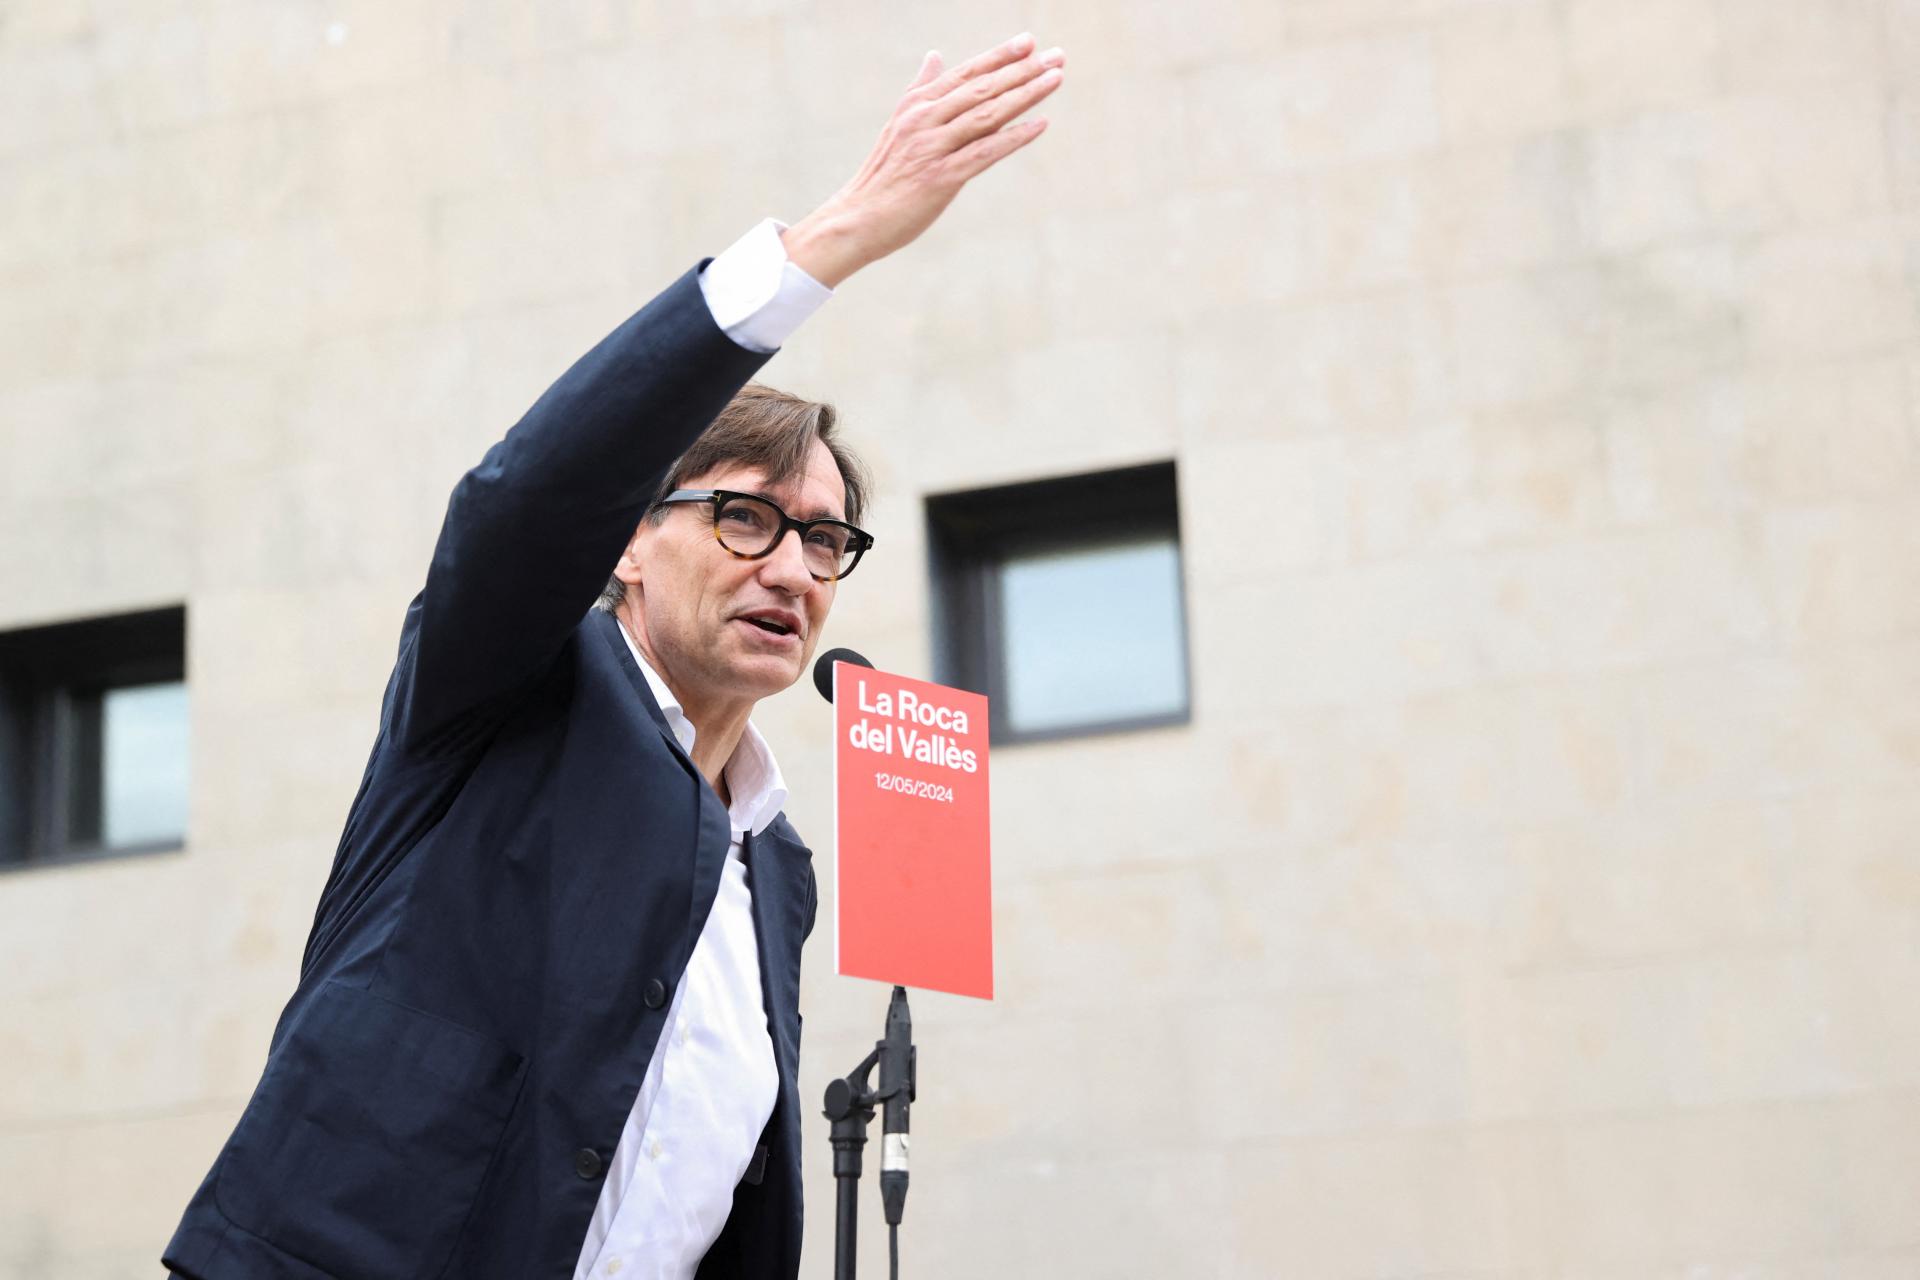 Voľby v Katalánsku vyhrali socialisti, vládu však sami nezostavia